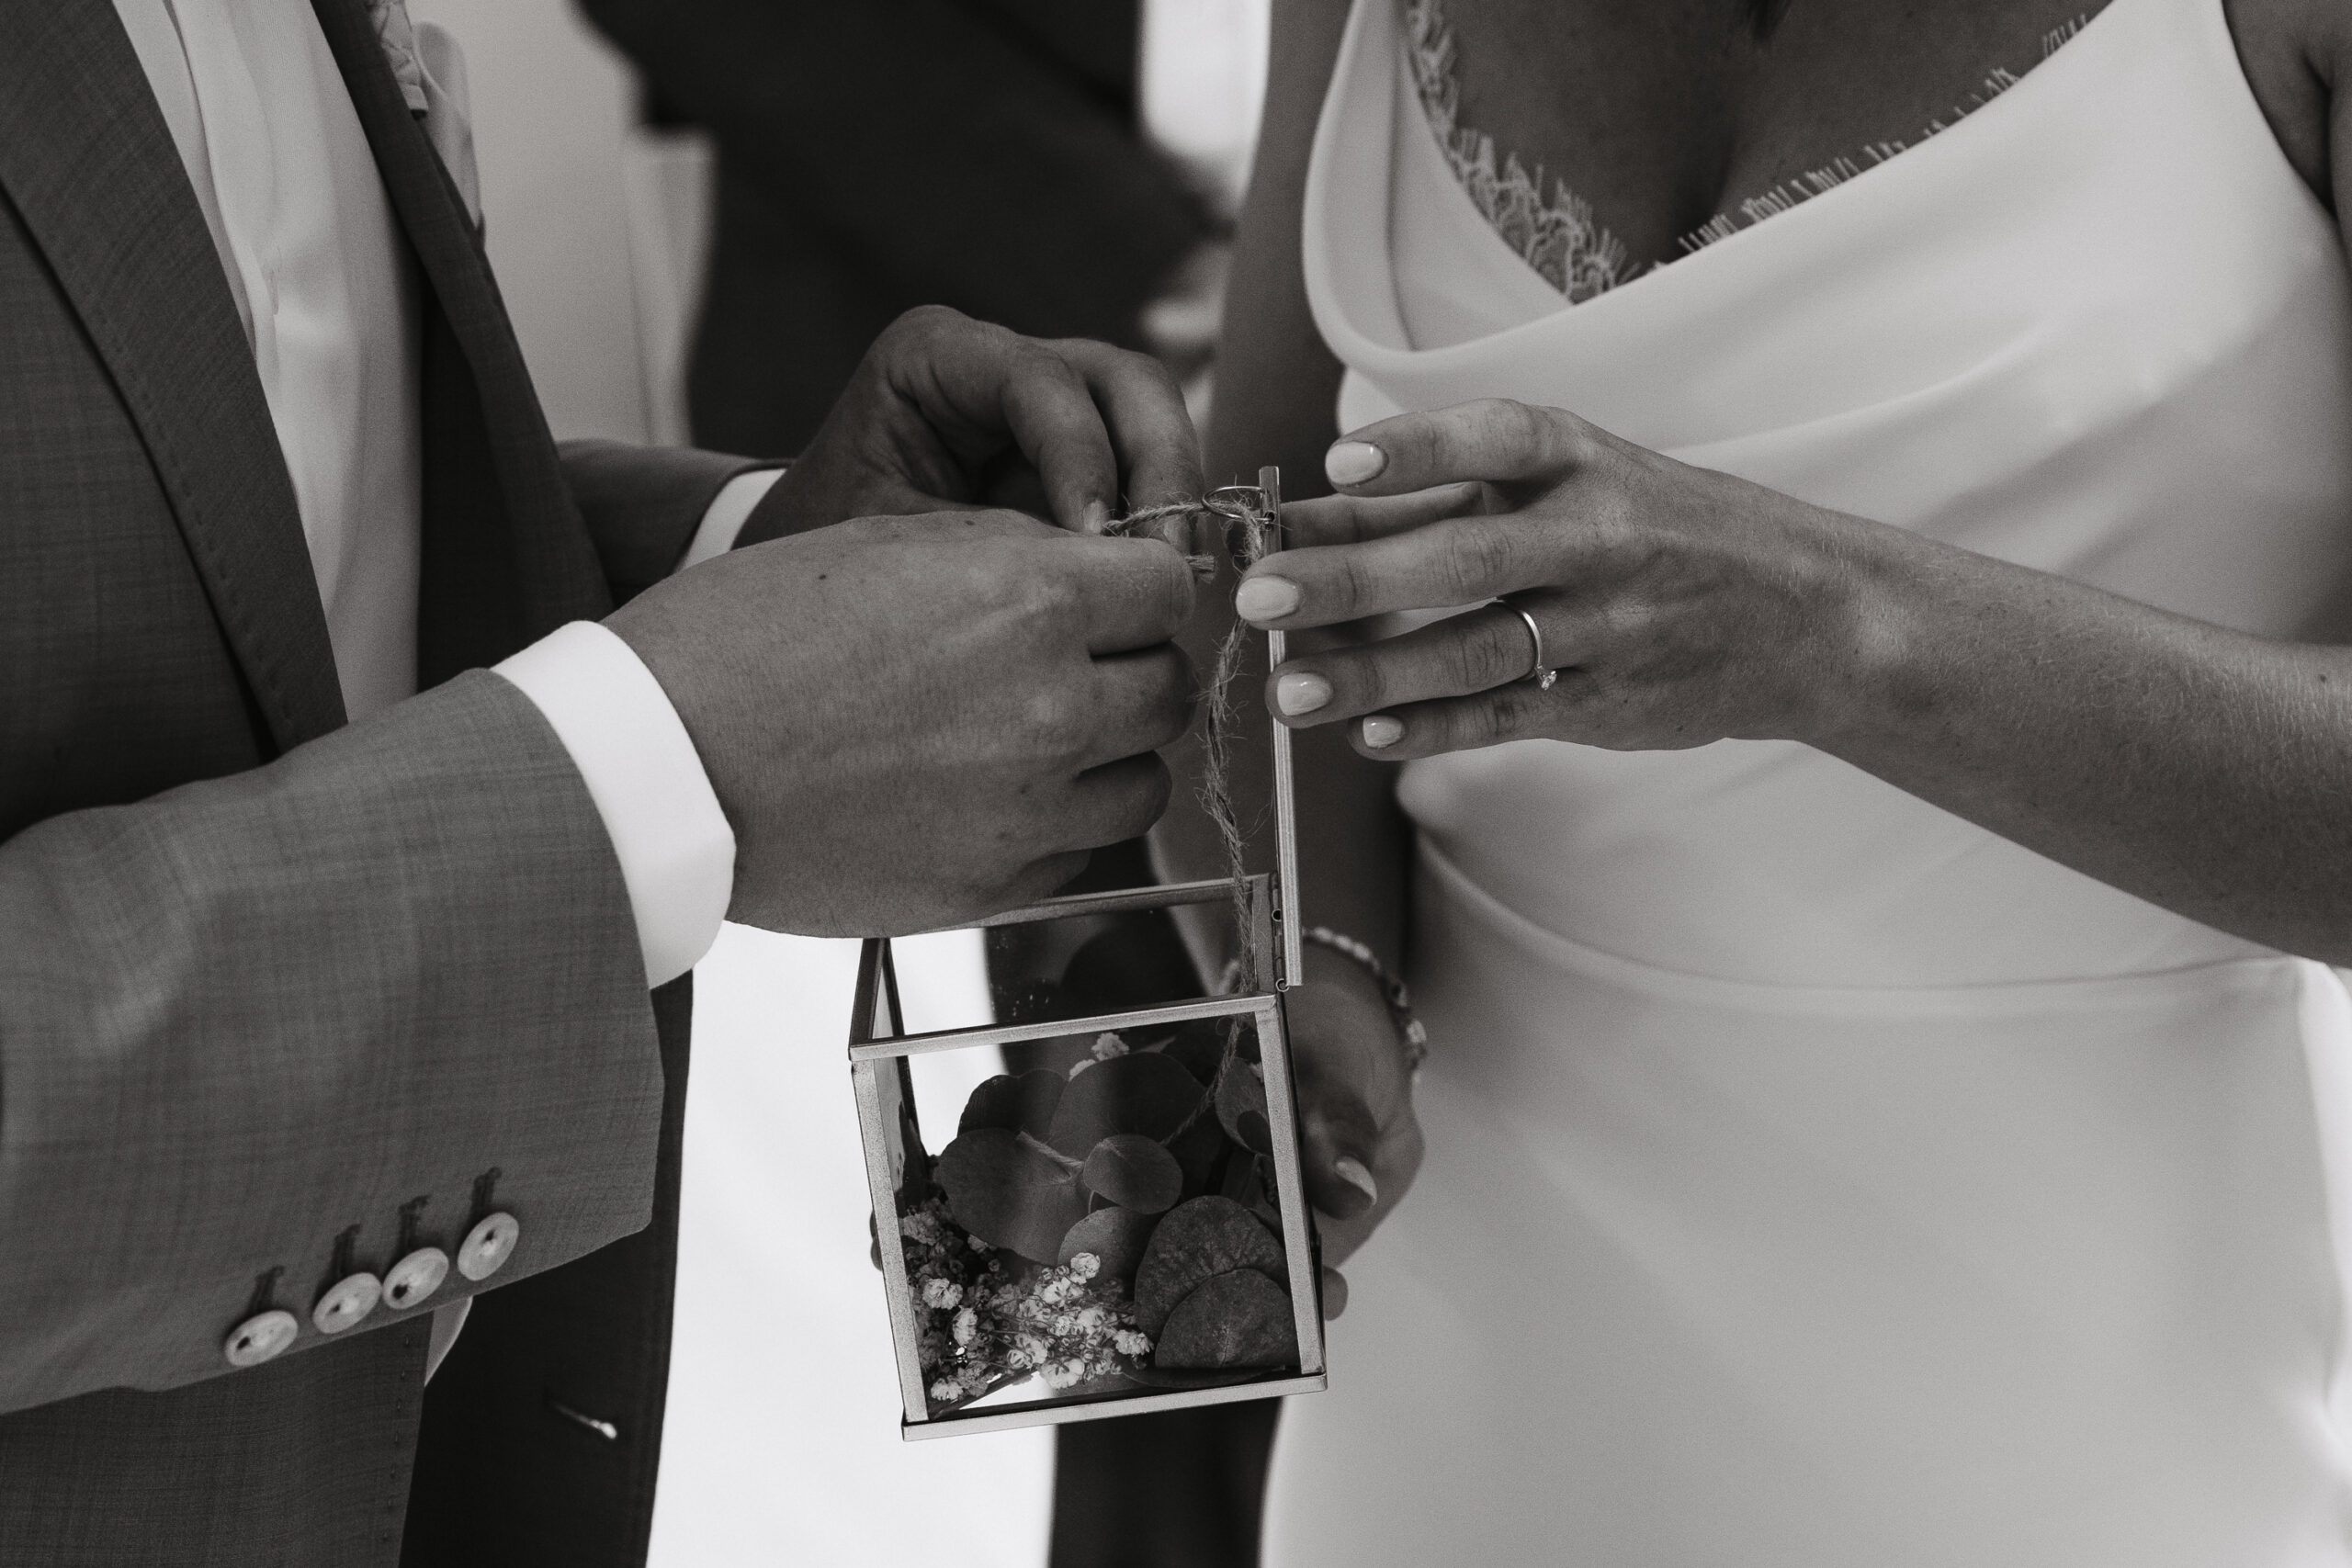 Das Brautpaar holt gemeinsam die Ringe aus der dekorativen Ringbox. Bild in Schwarz Weiß.